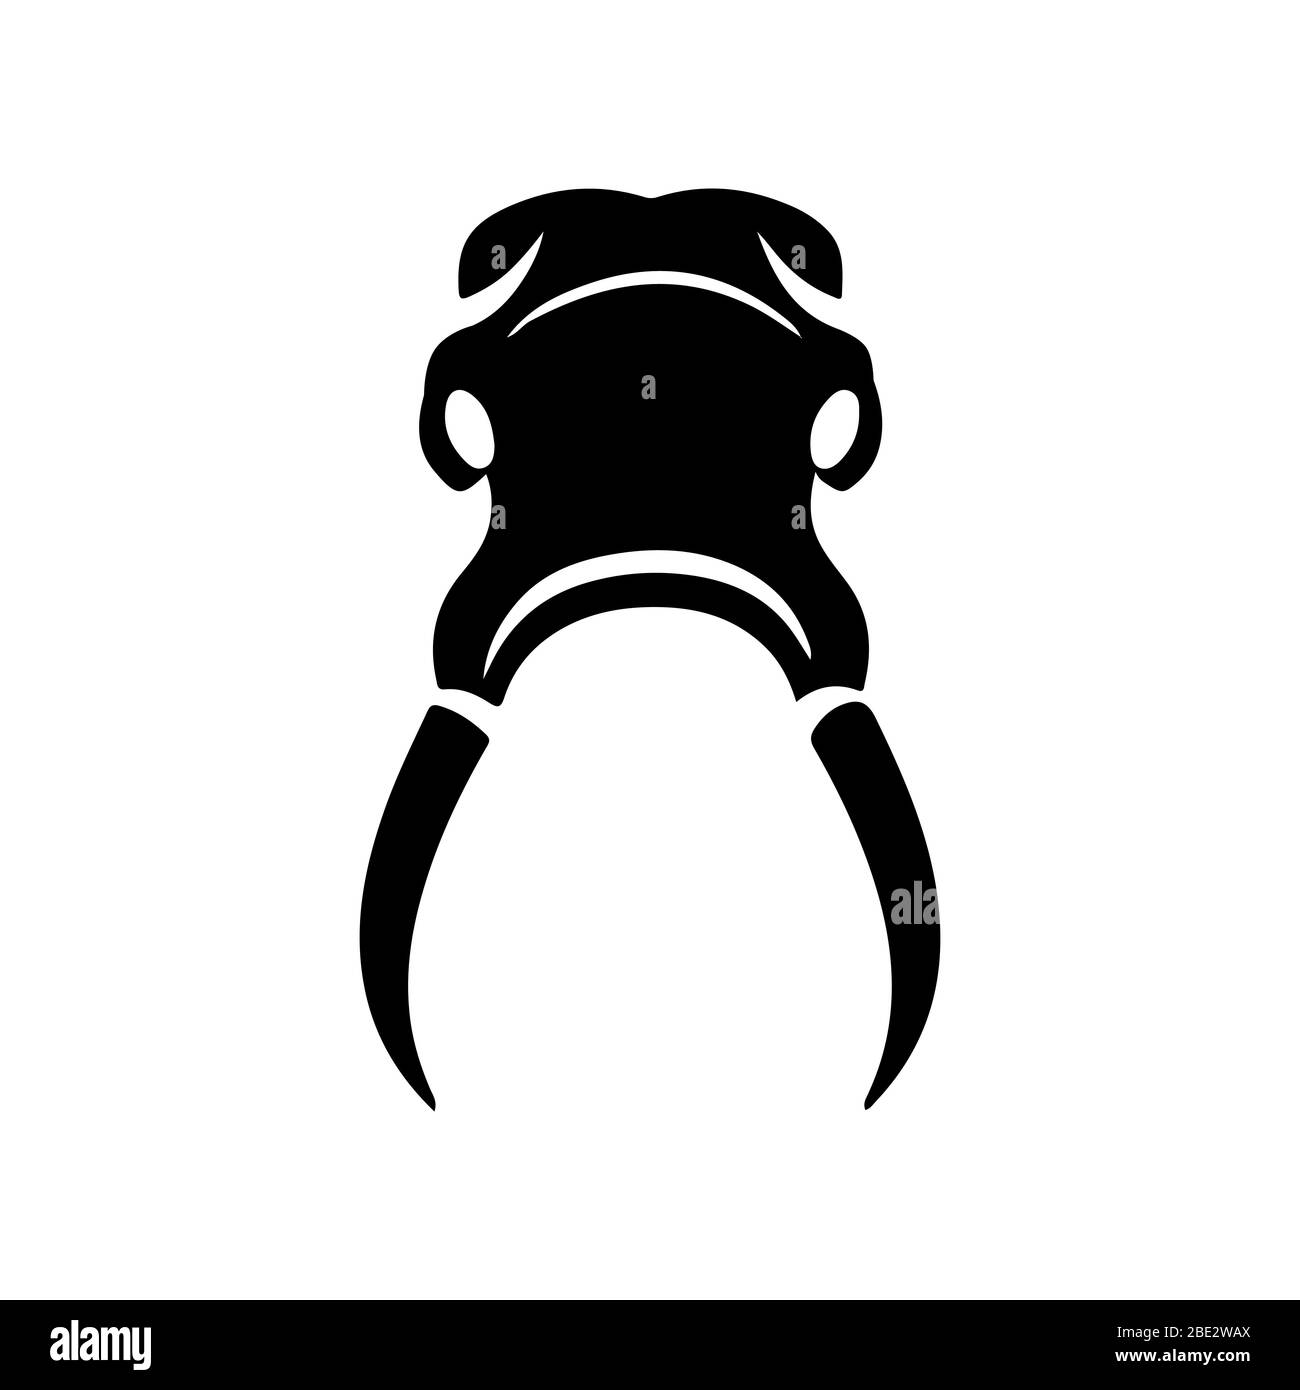 Elefant Schädel Silhouette, schwarz minimalistisch flachen Vektor Illustration Symbol, Symbol für Wildtiere, Natur, Umwelt, gefährdet und Wilderei Stock Vektor